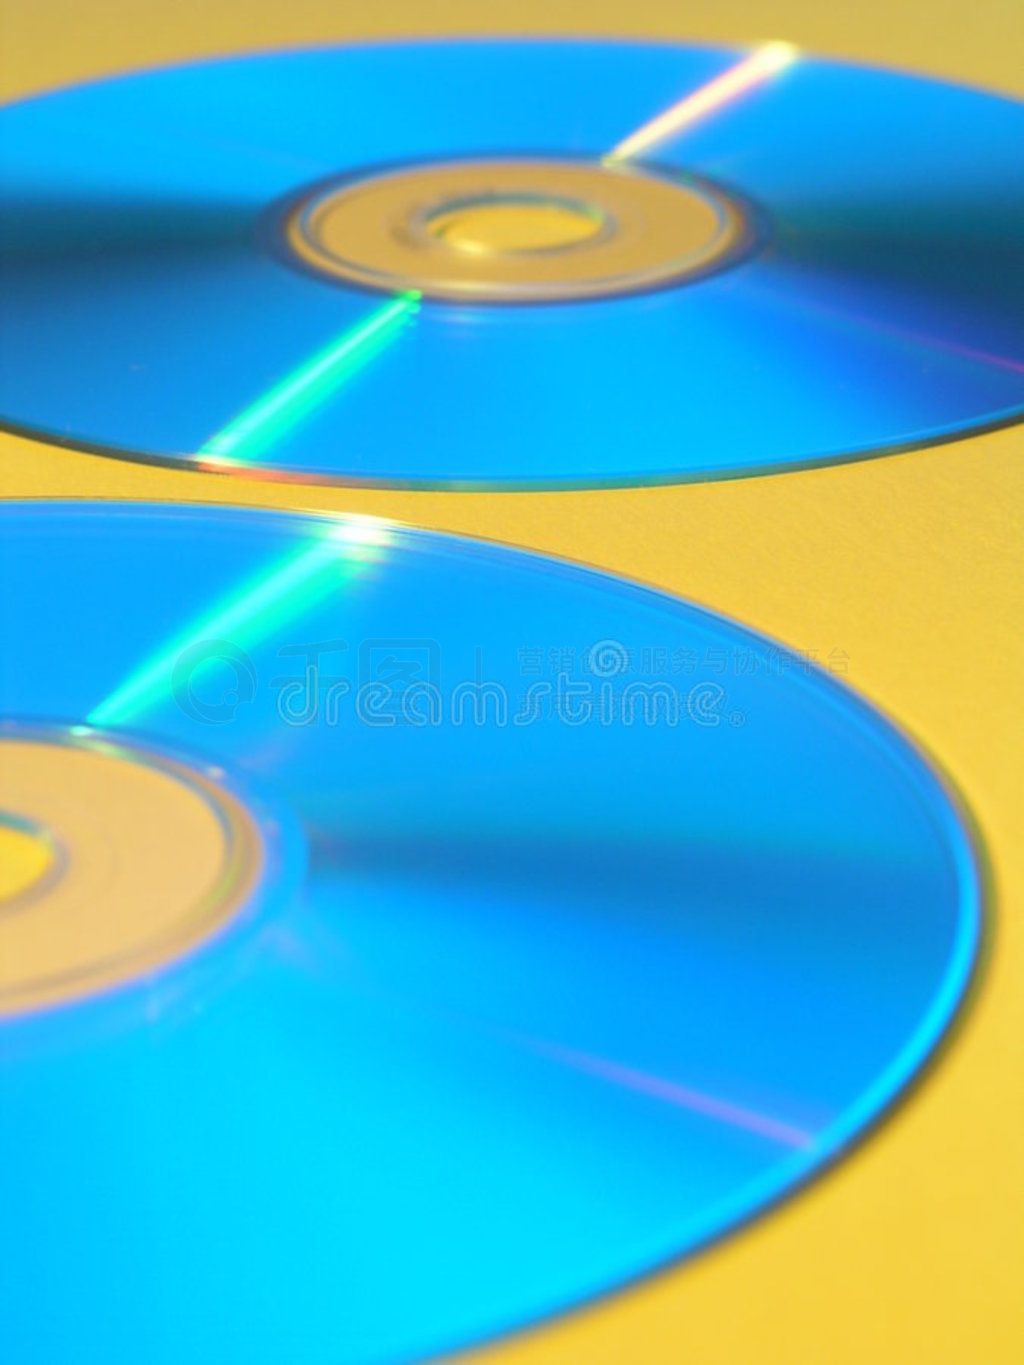 cd-ROM